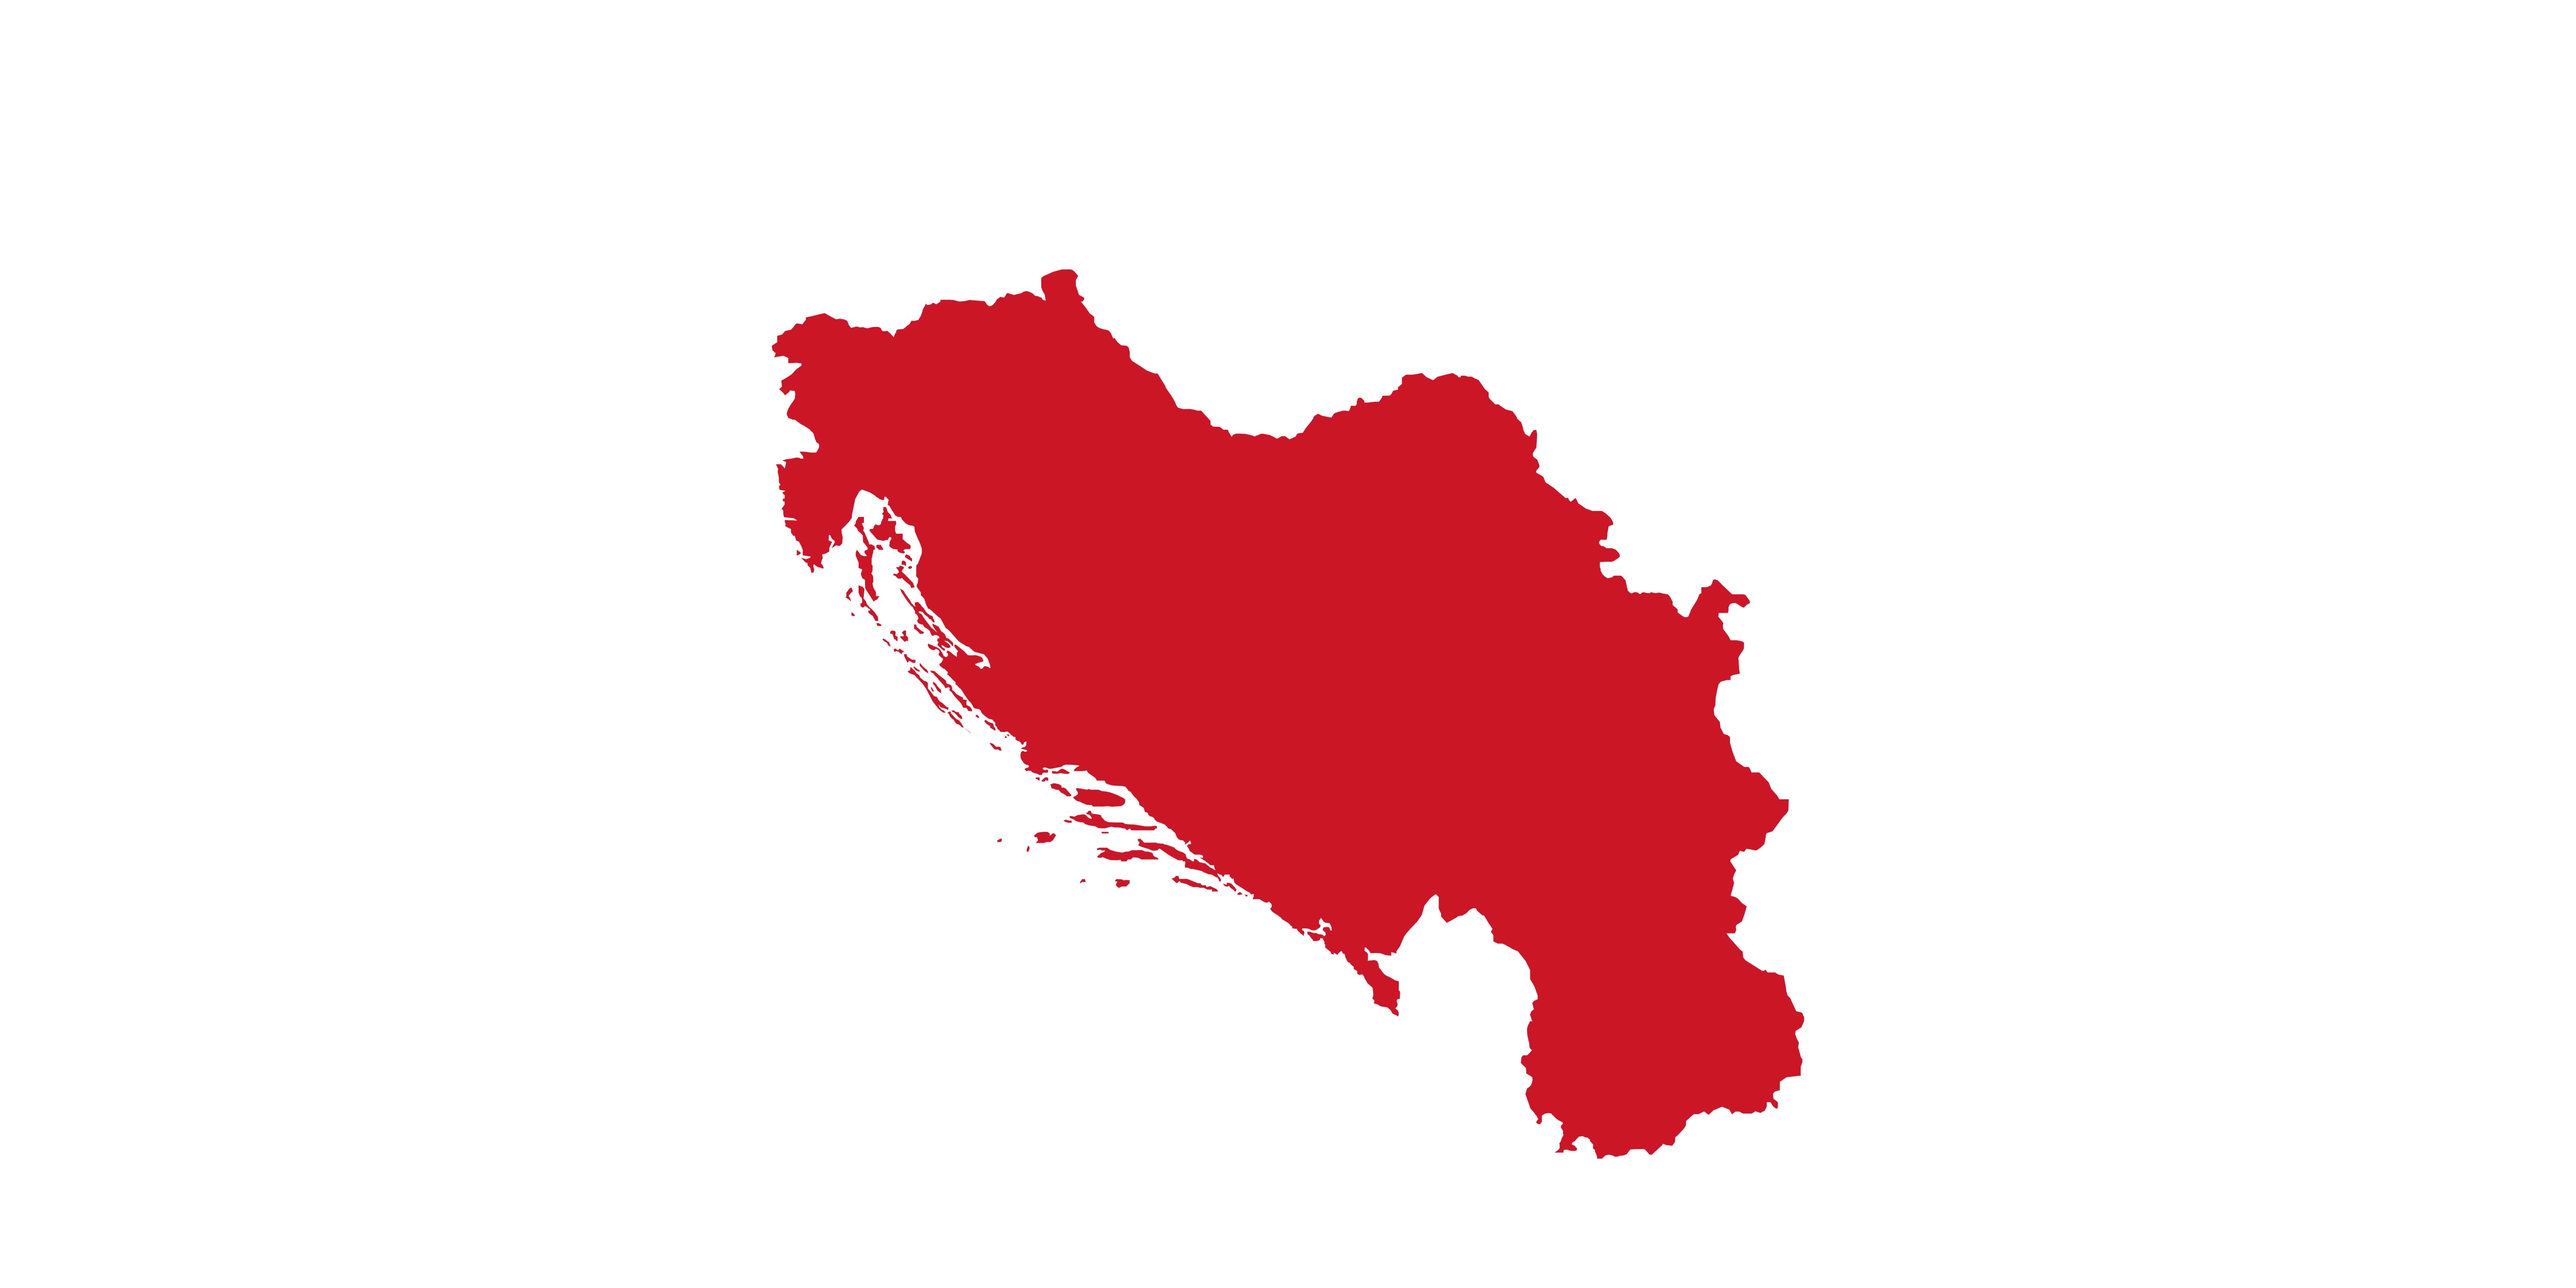 grafika projektowa - Jugosławia, wykonanie: Arkadiusz Zając